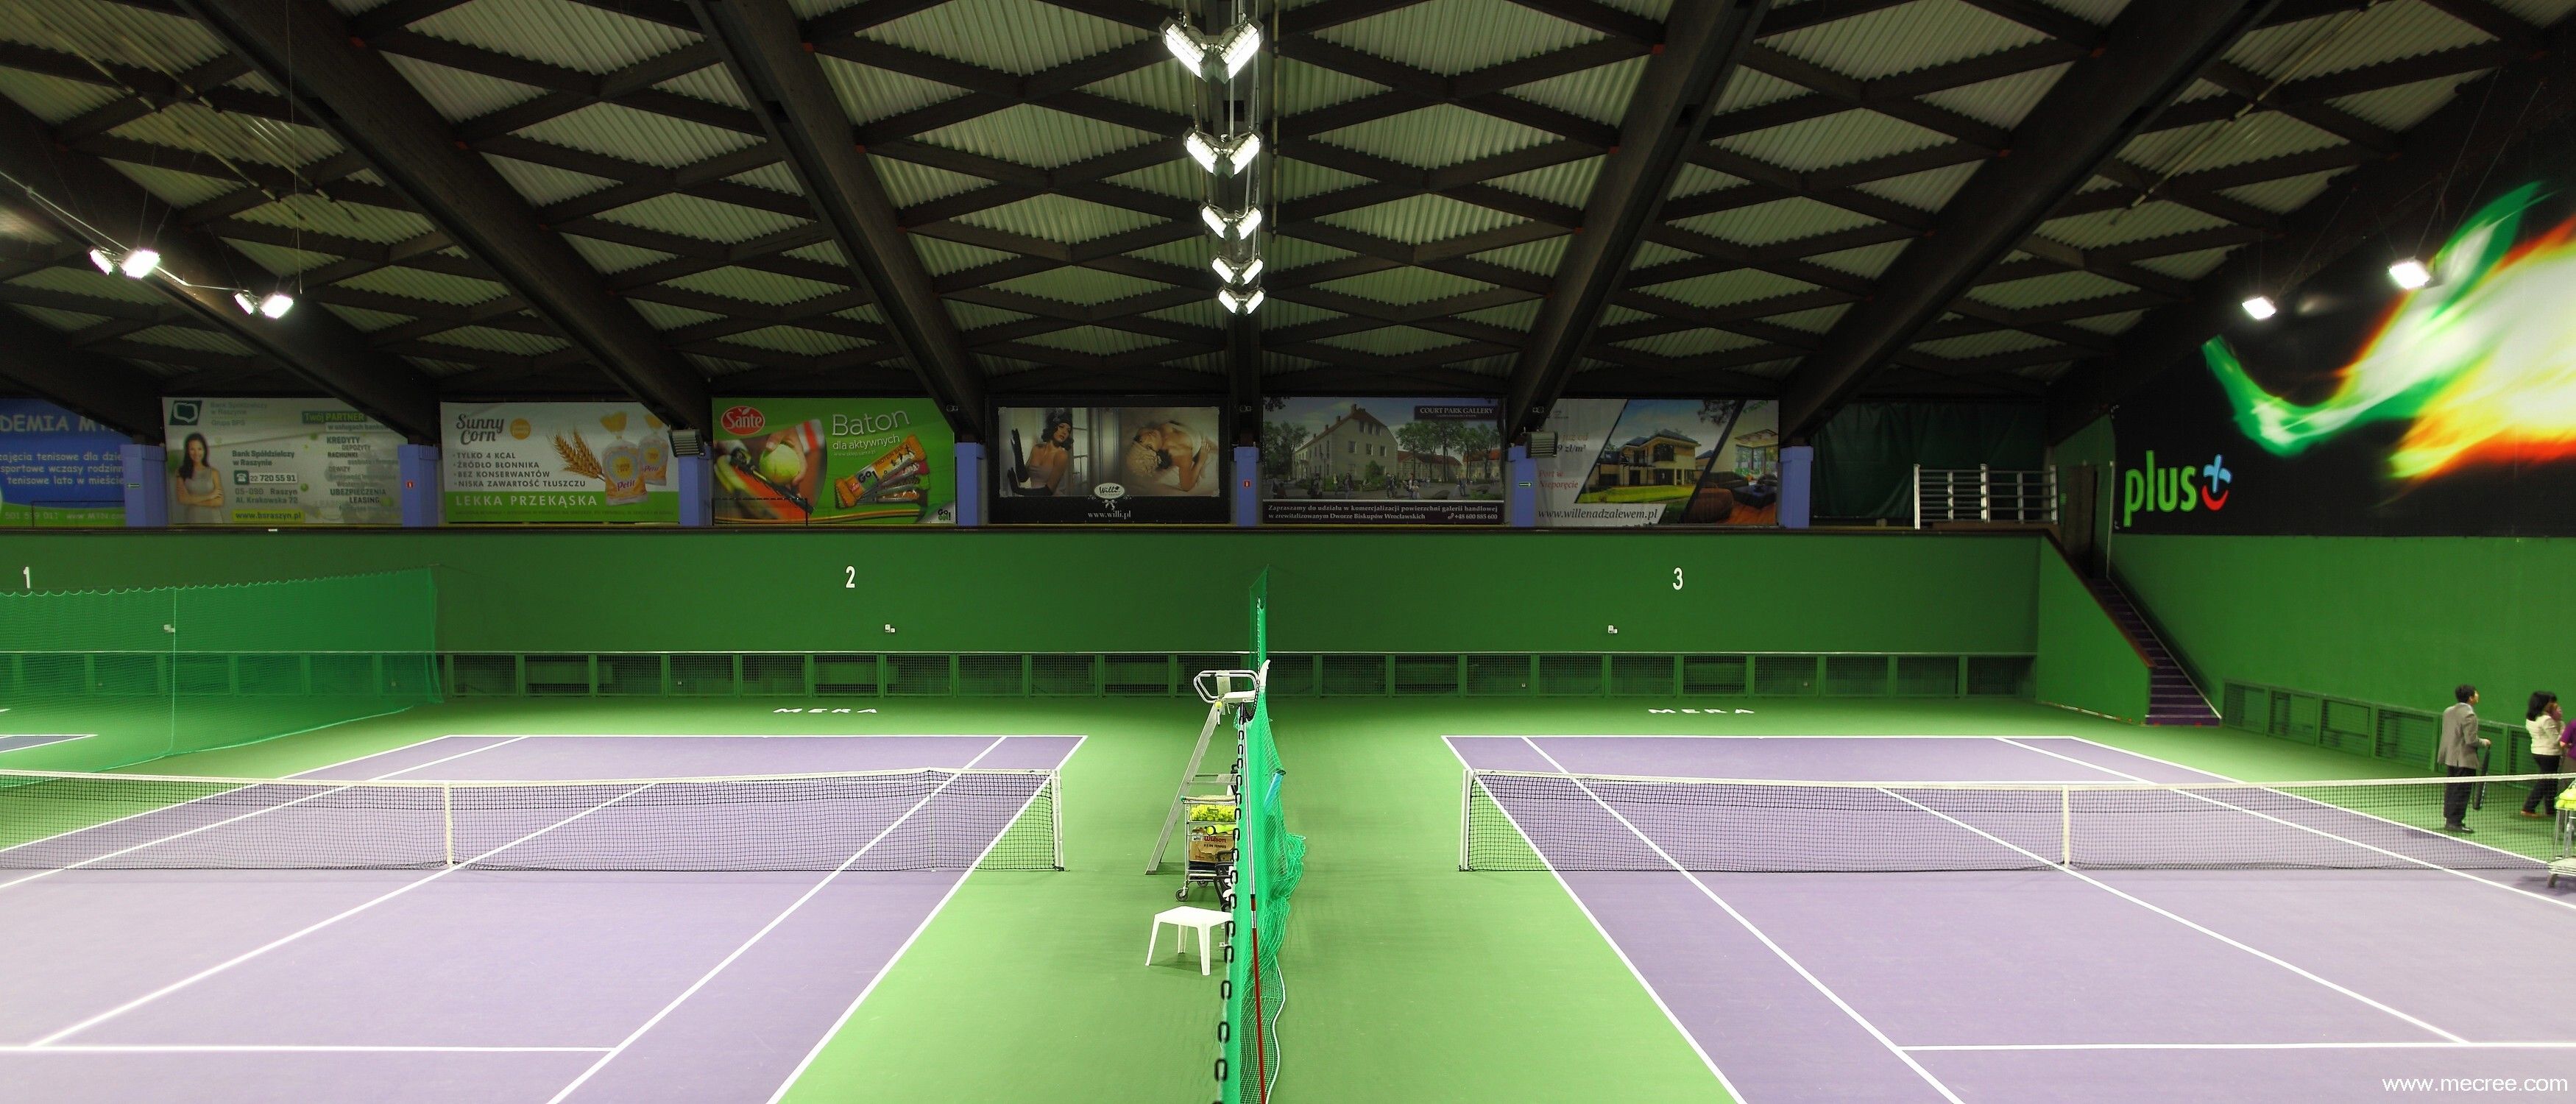 Indoor Tennis Courts Lighting by Mecree